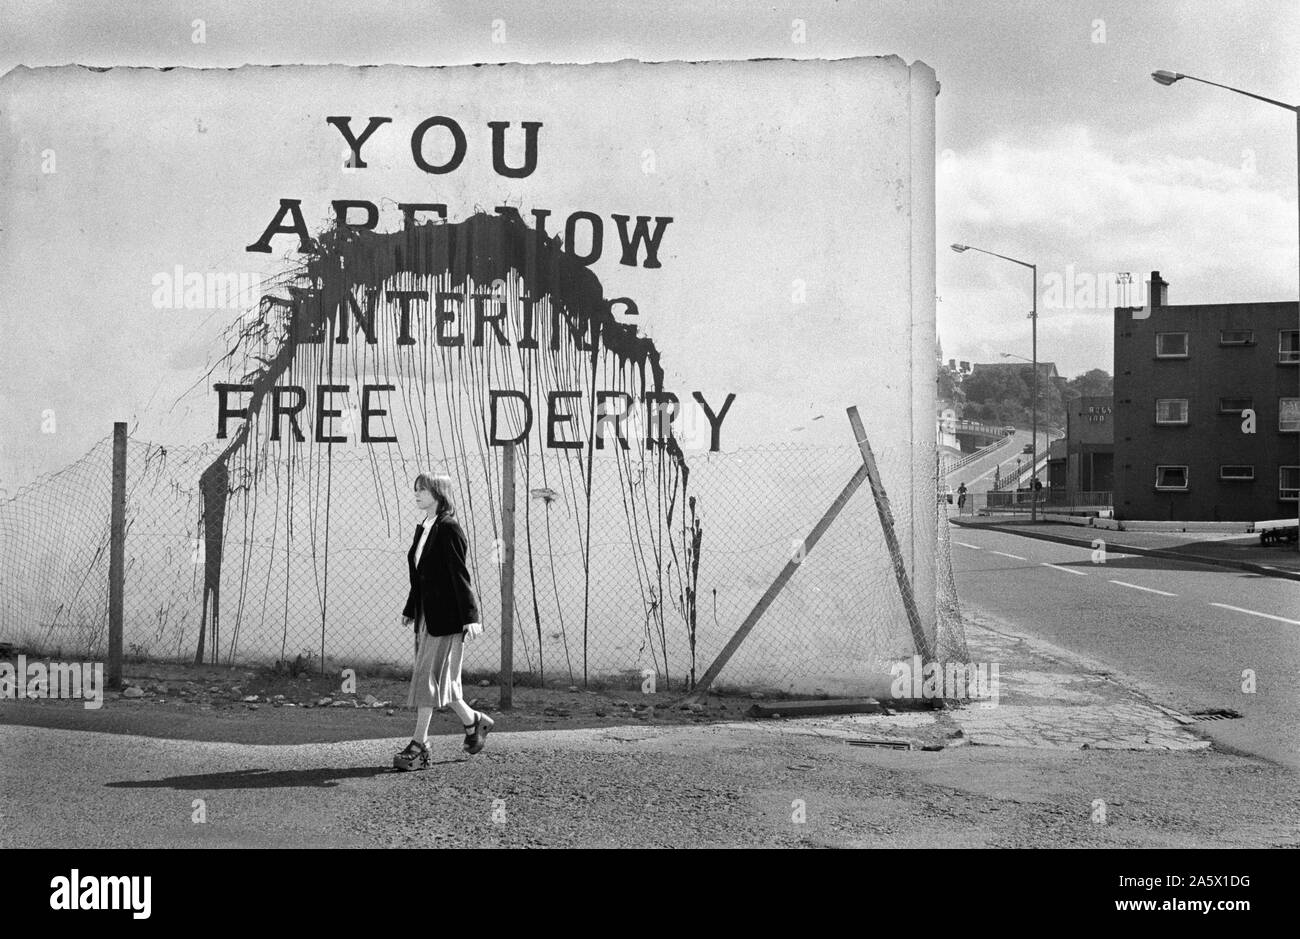 I problemi degli anni settanta Derry Irlanda del Nord Londonderry. 1979. Si sta ora entrando in libera Derry parete murale dipinto su sul frontone della casa ormai distrutto. Sapere come Free Derry Corner, situato in corrispondenza della giunzione di Fahan Street & Rossville Street. 70S UK HOMER SYKES Foto Stock